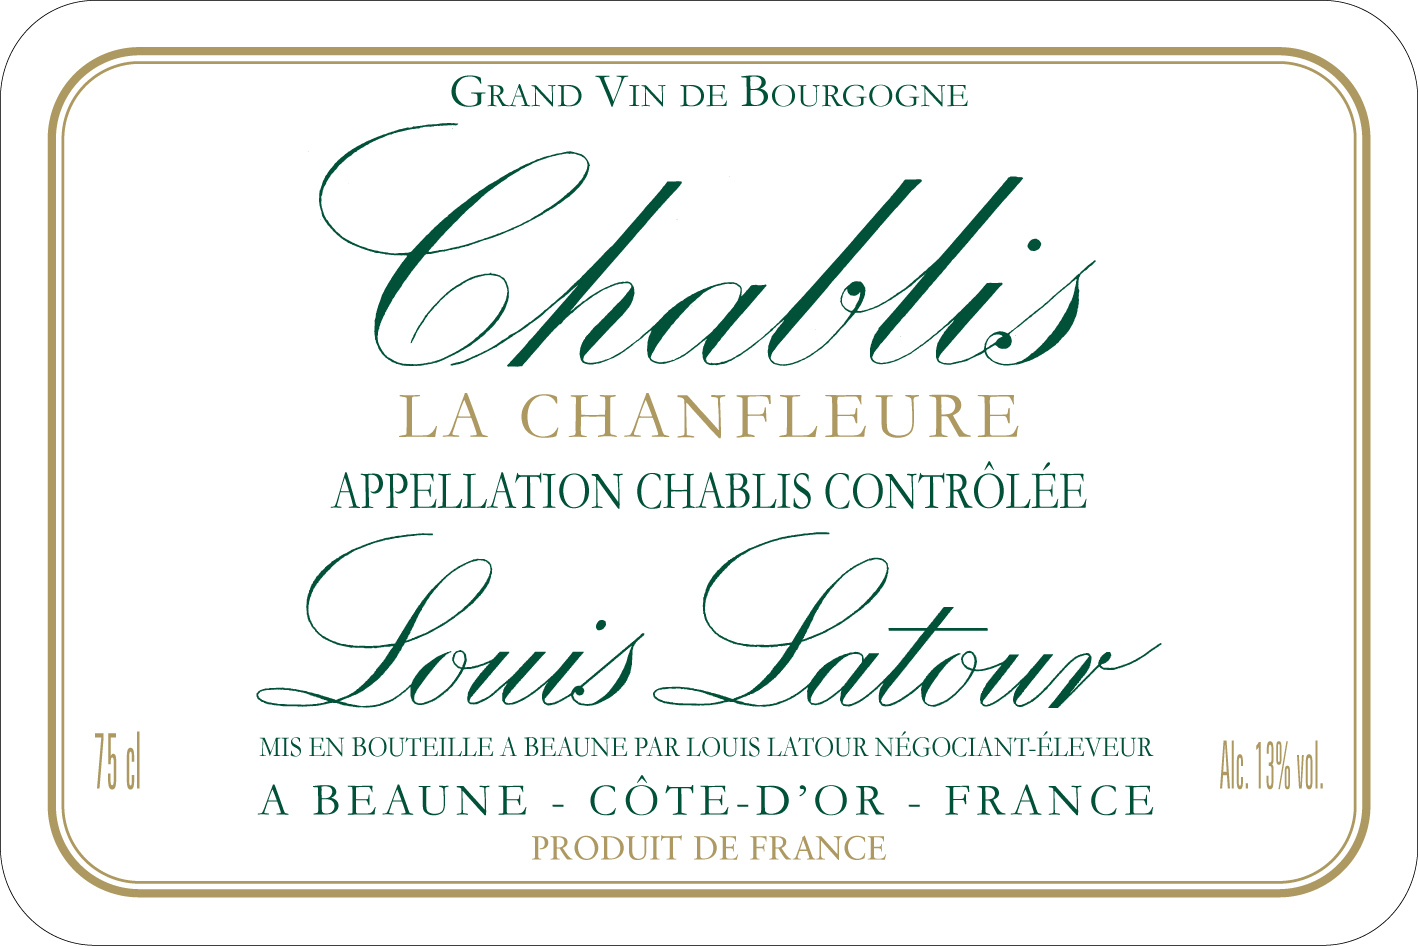 Louis Latour - Chablis - La Chanfleure label